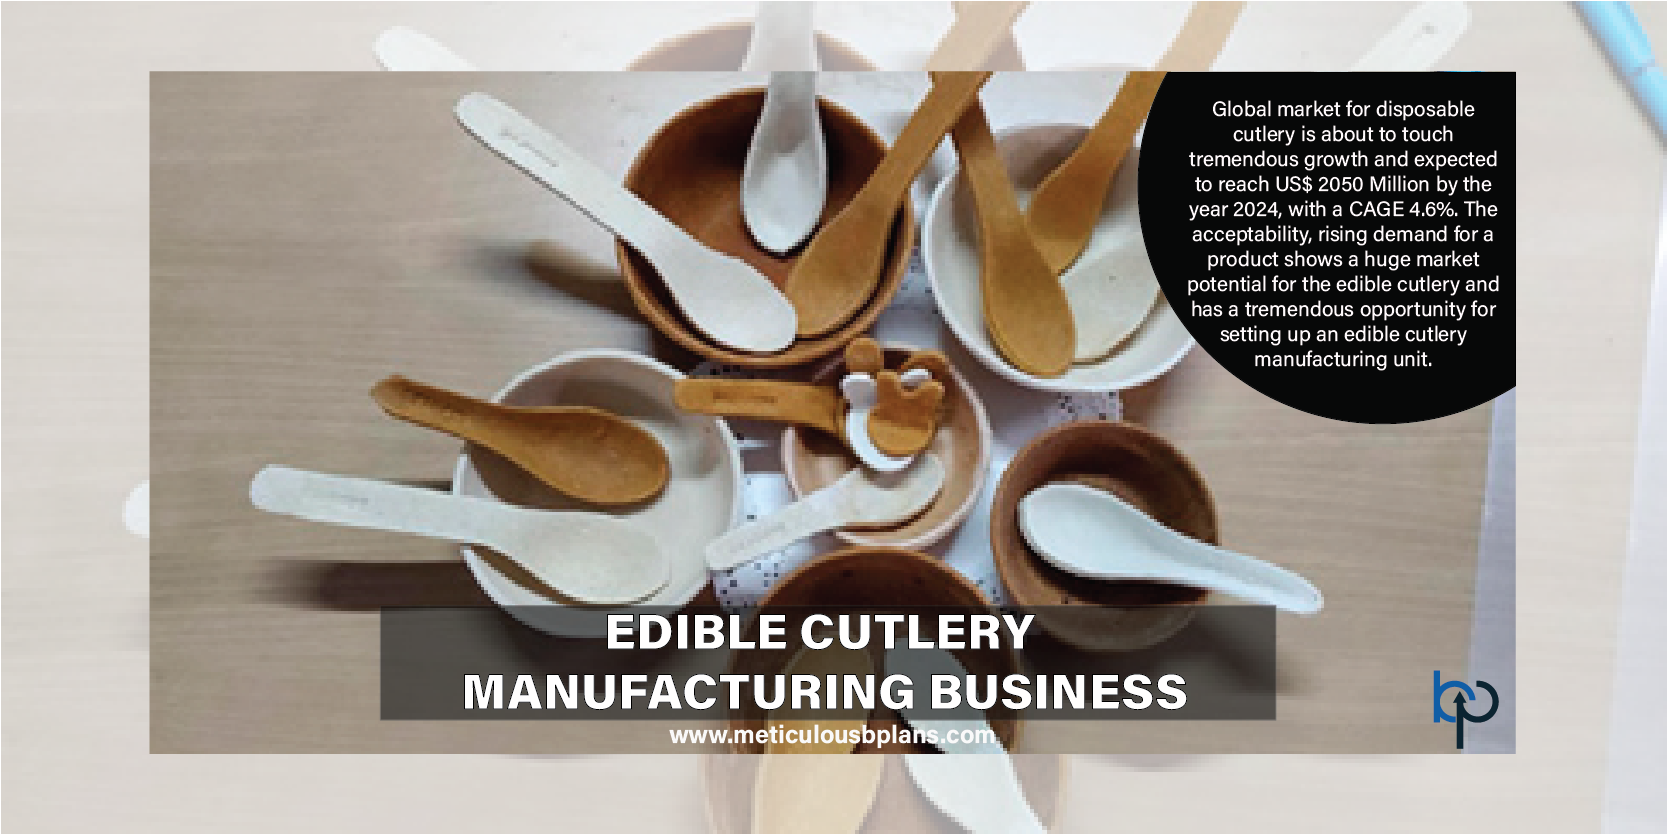 utensils manufacturing business plan